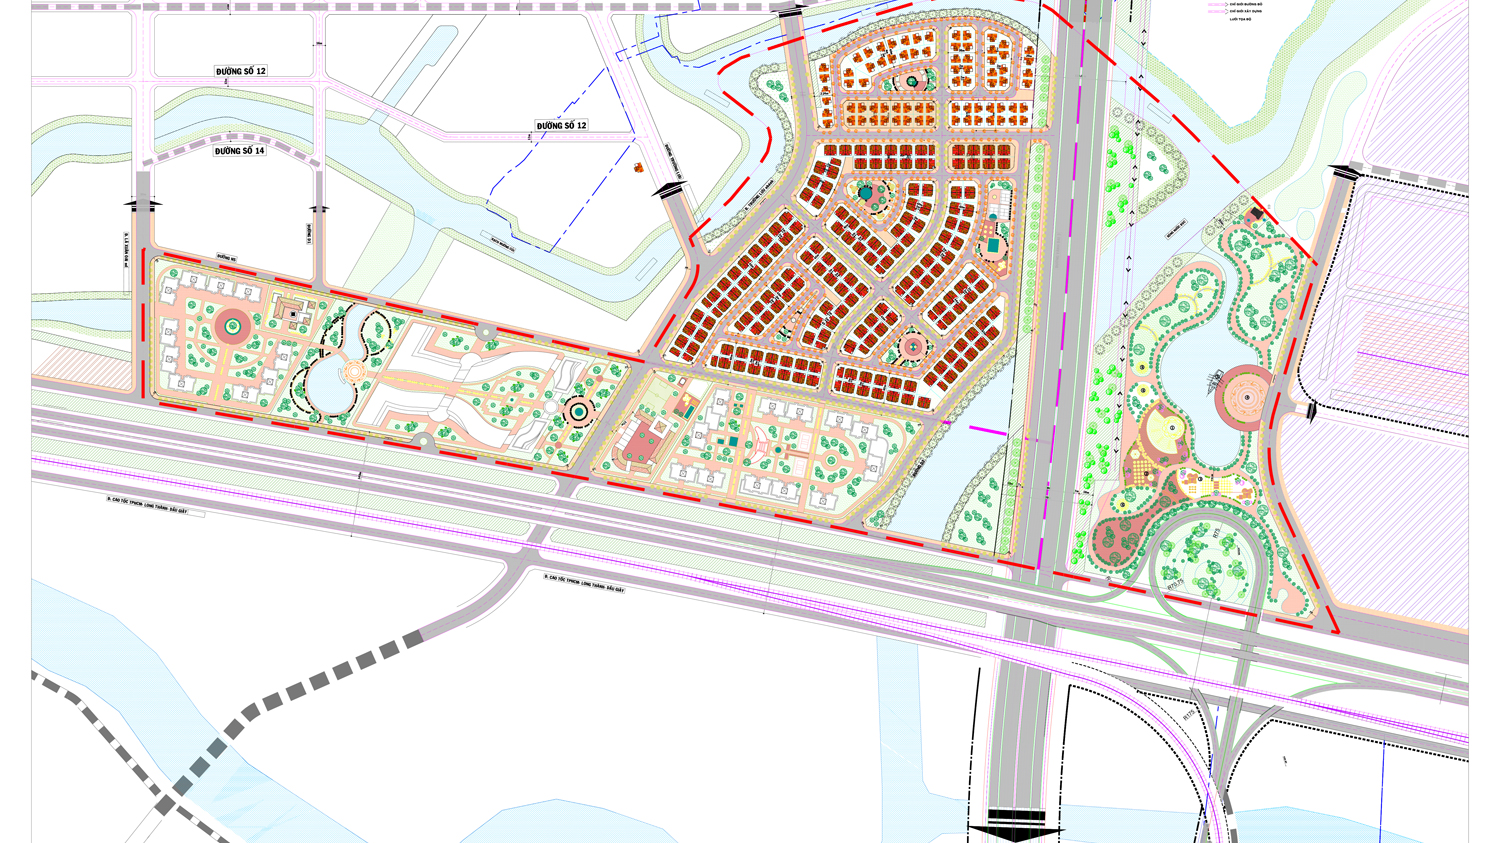 Đồ án thiết kế đô thị riêng tỷ lệ 1/500 khu vực nút giao thông Vành đai 3 - Cao tốc TP.HCM-Long Thành-Dầu Giây